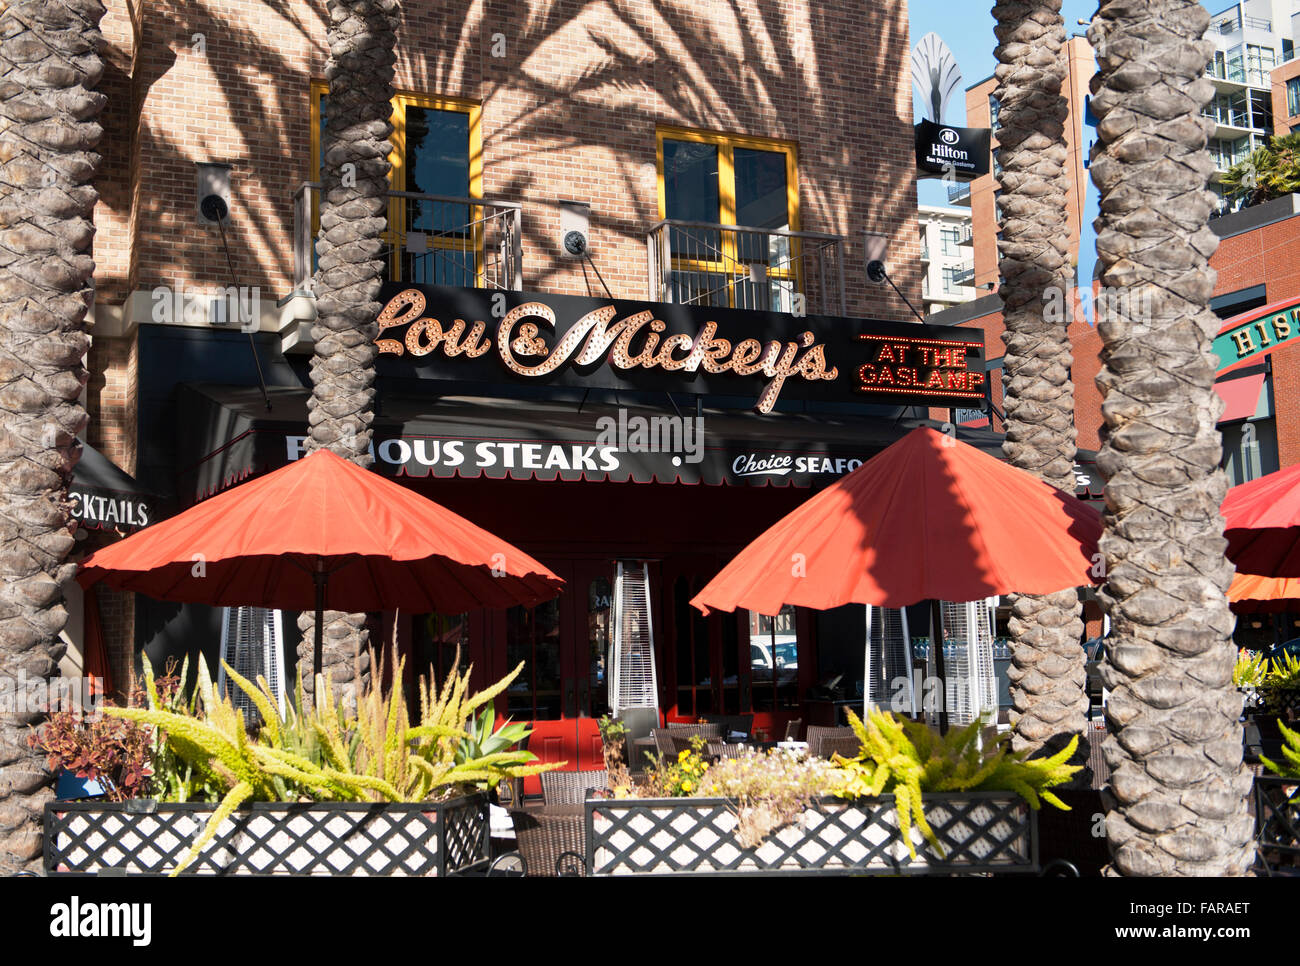 Lou und Mickys Restaurant im Gaslamp Quarter in San Diego, Kalifornien Stockfoto